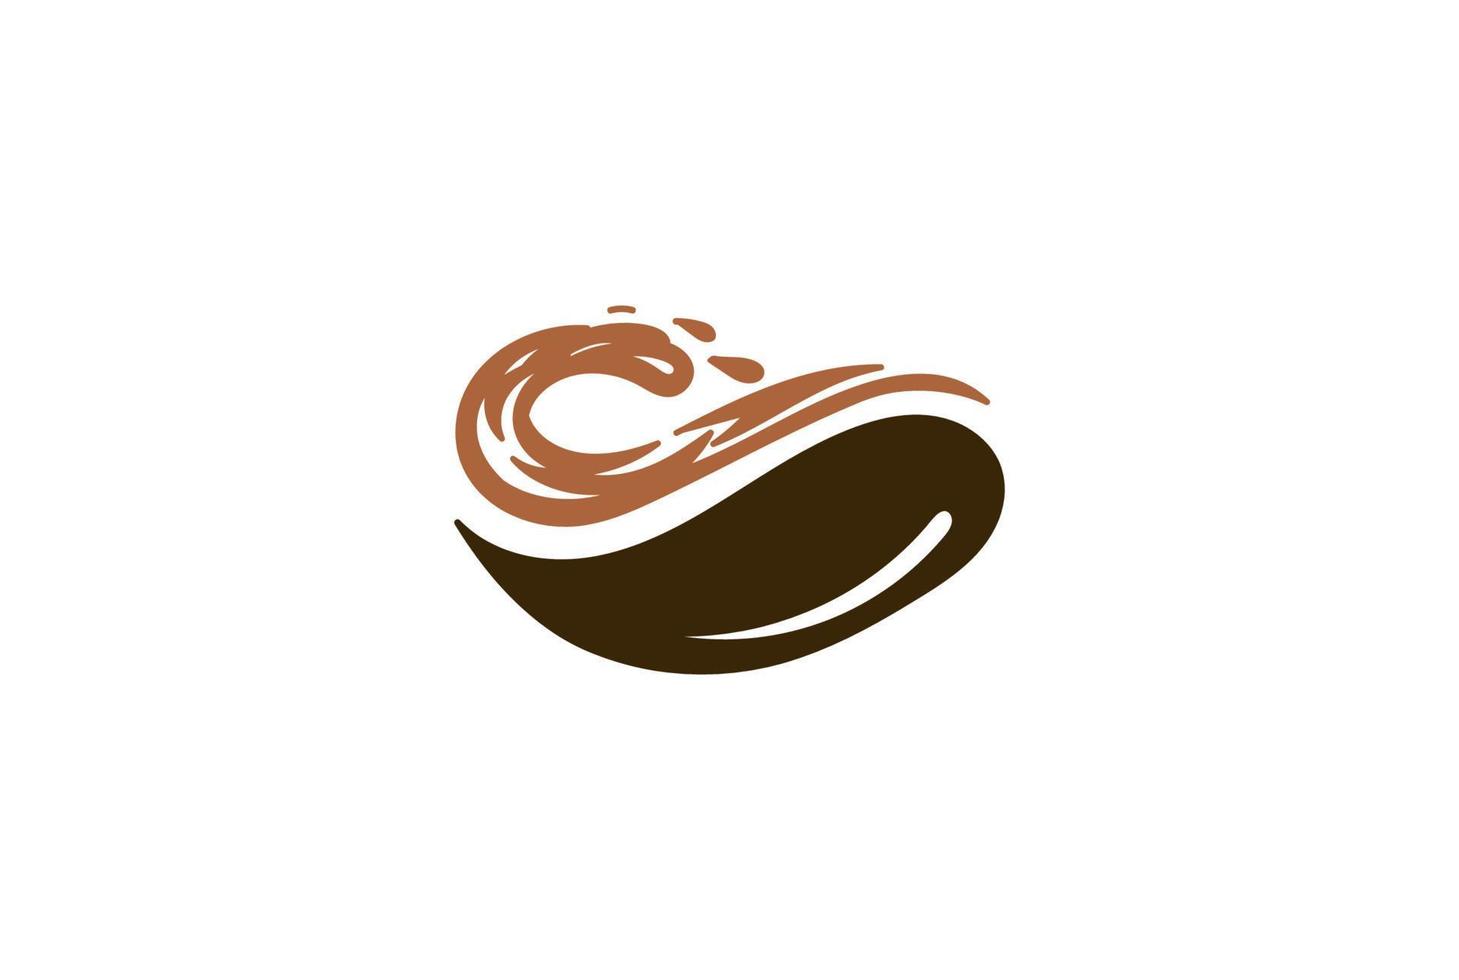 grão de café retrô vintage com onda de praia oceânica para vetor de design de logotipo de bar de café